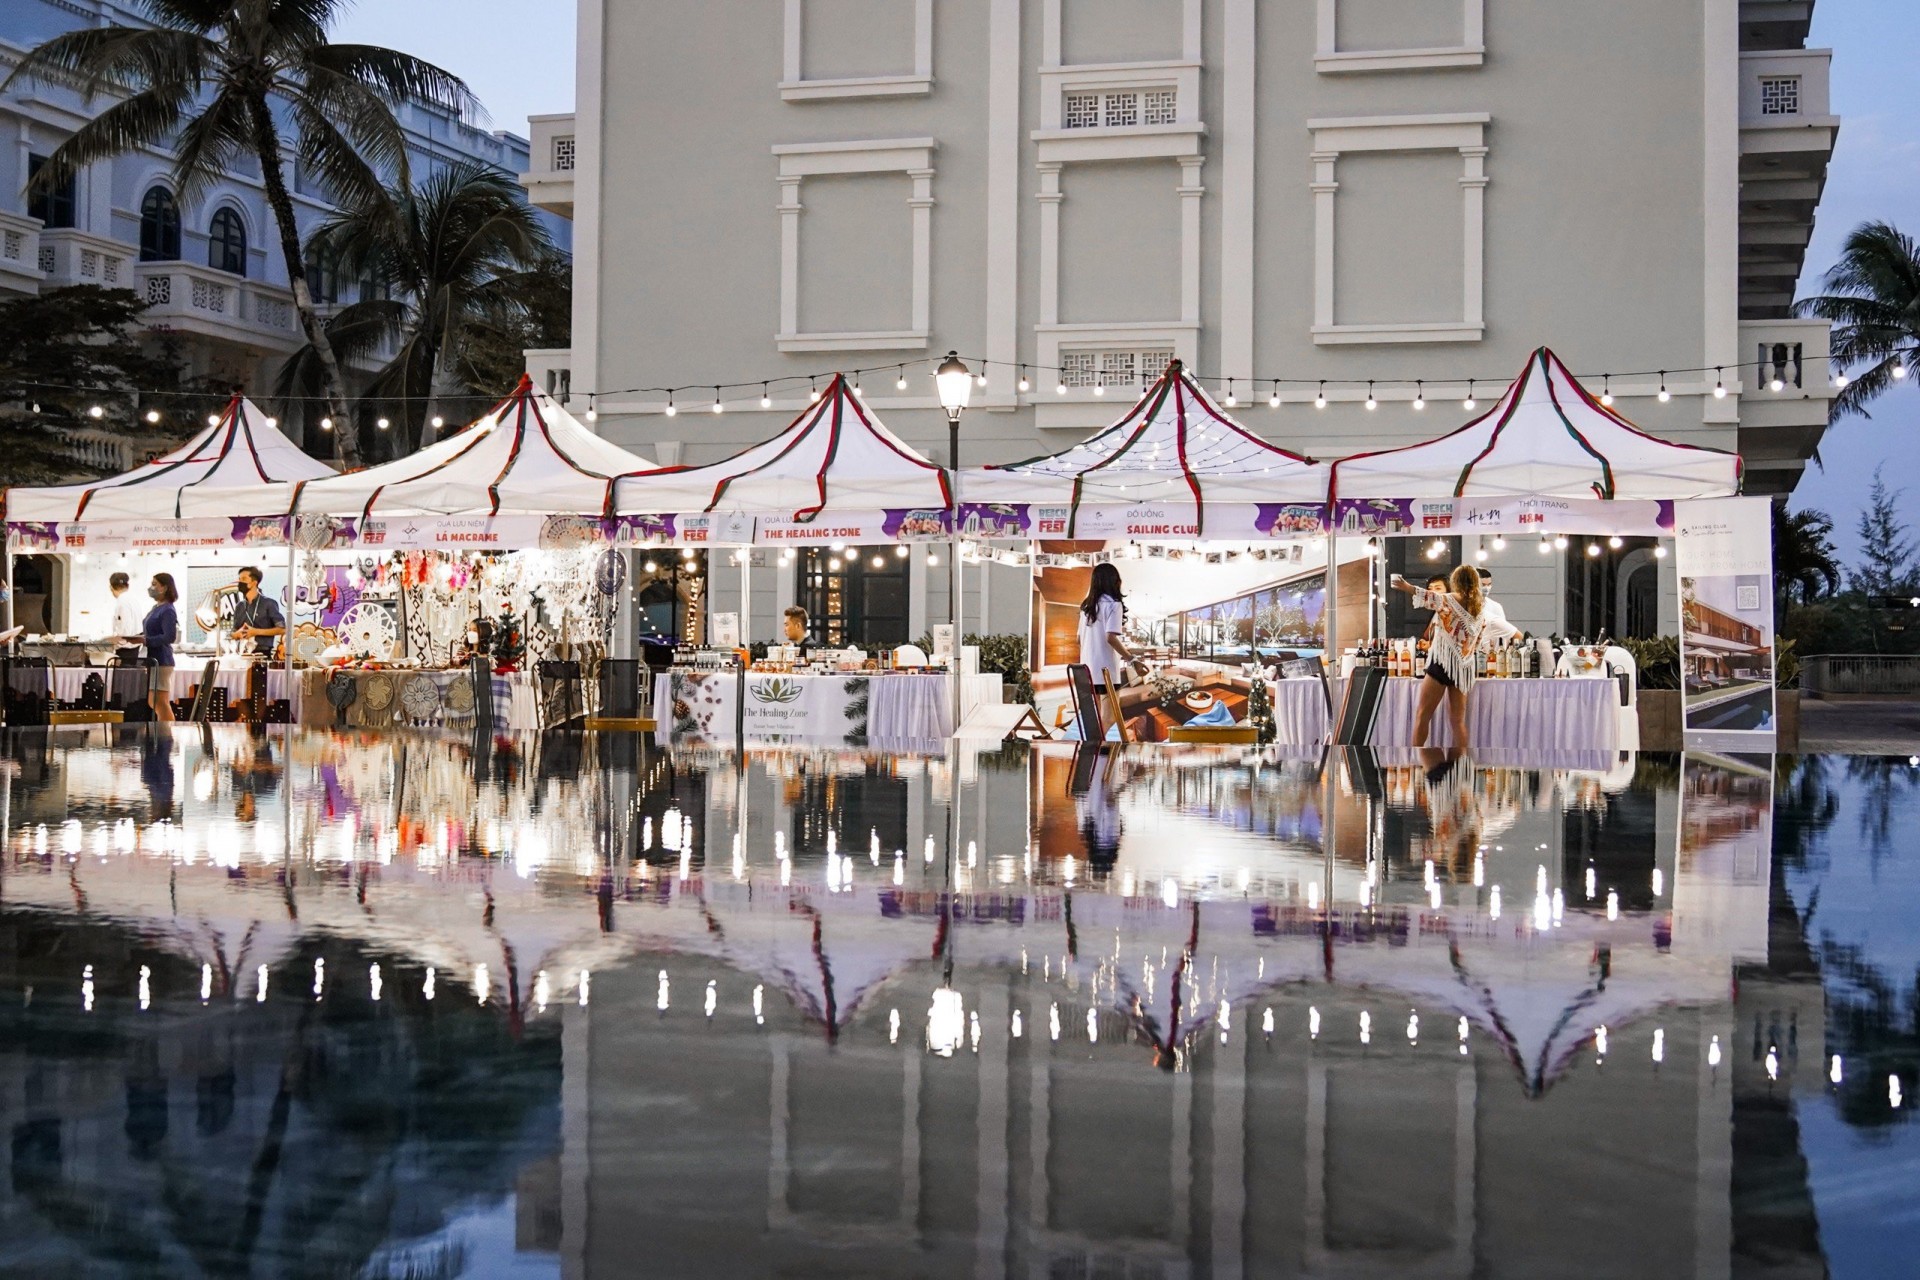 Trung tâm các hoạt động giải trí, ẩm thực và vui chơi trong 3 ngày sự kiện nằm ở bể bơi ngoài trời.